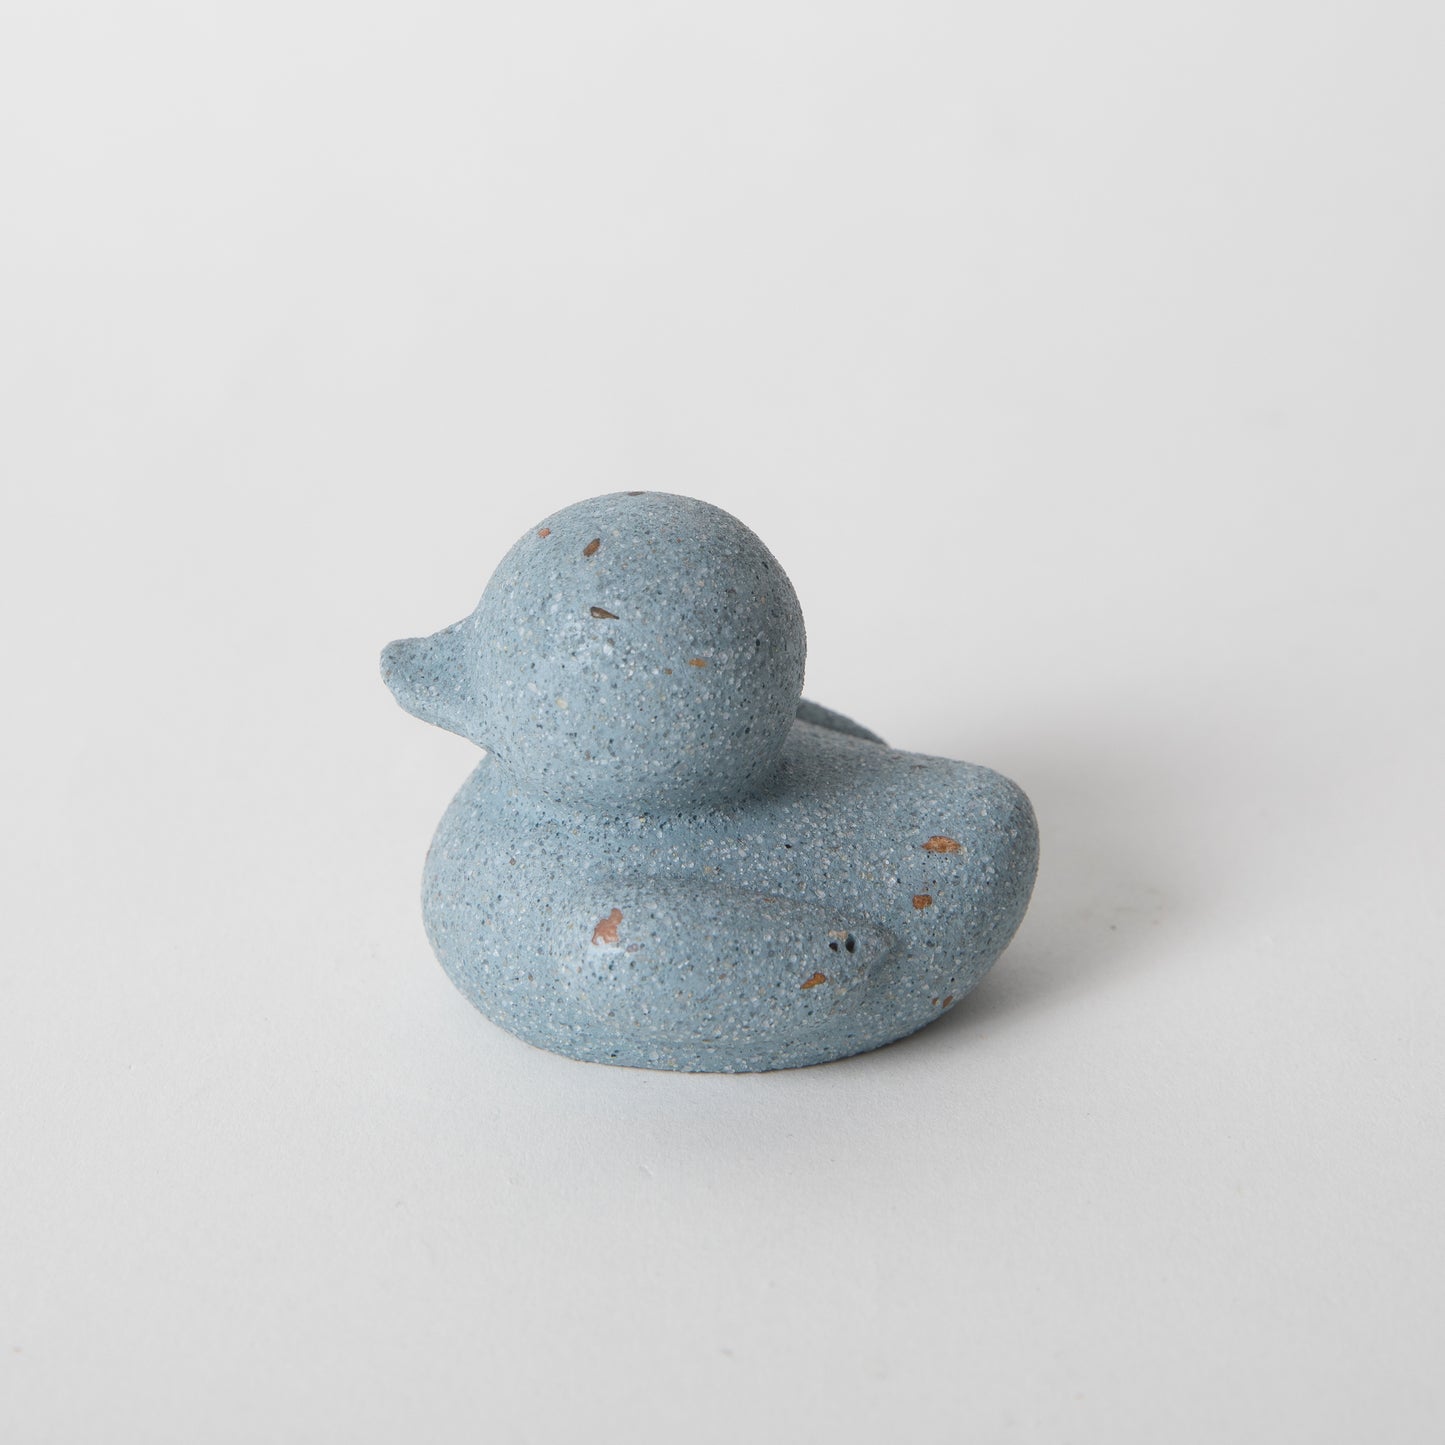 mini "rubber" ducky in light blue terrazzo